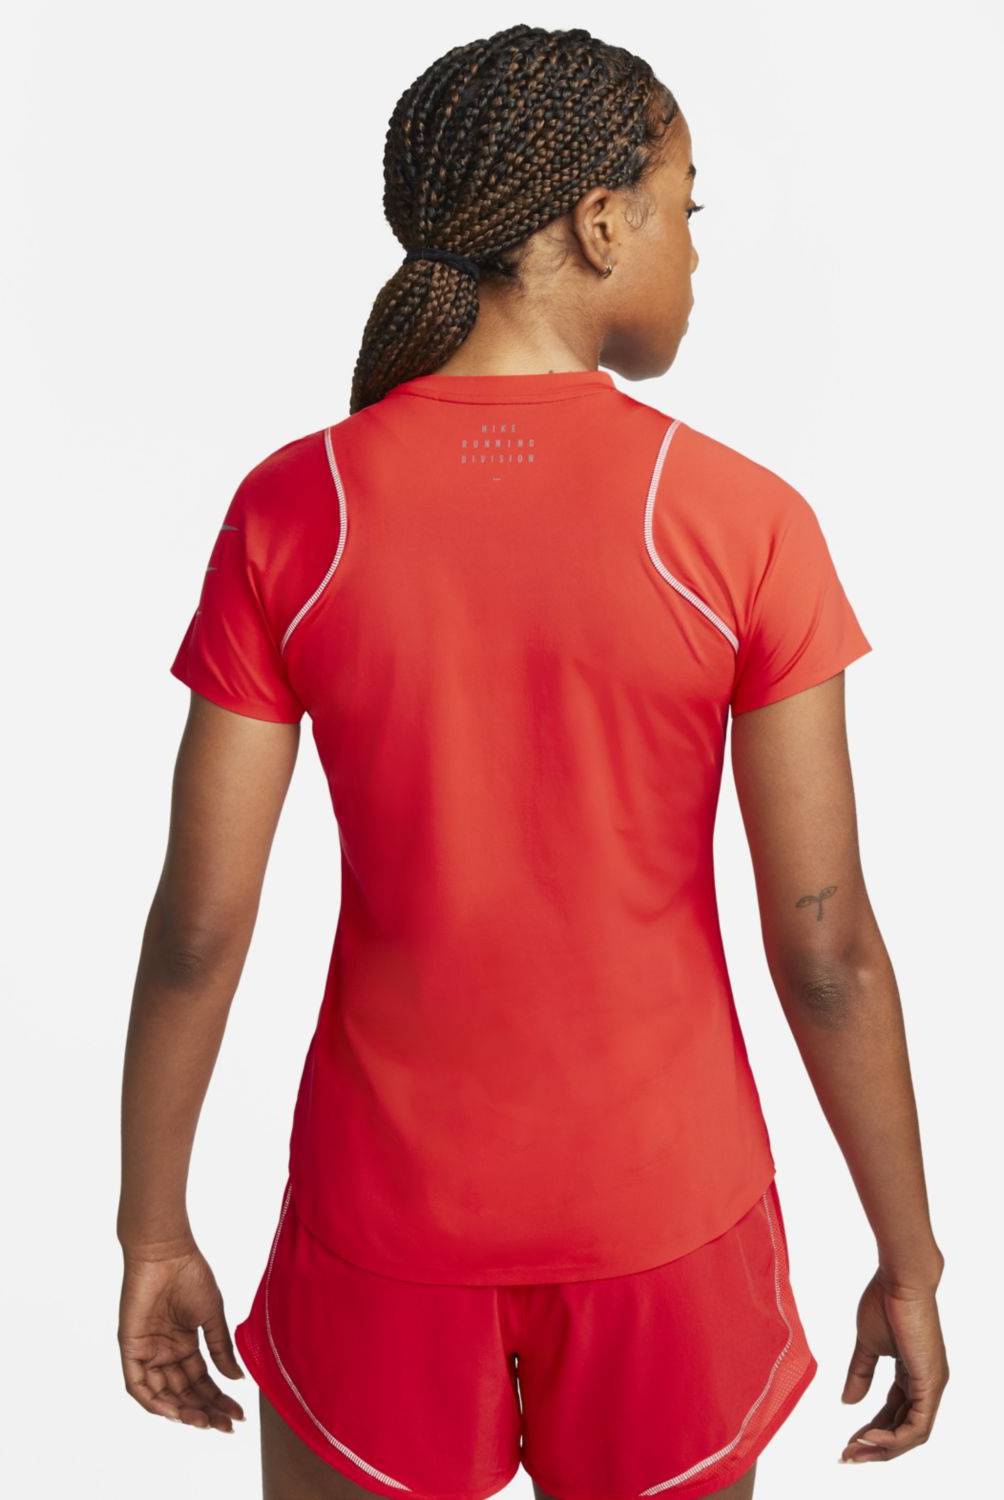 NIKE - Polera Sports T-Shirts Fitness Running Mujer Nike